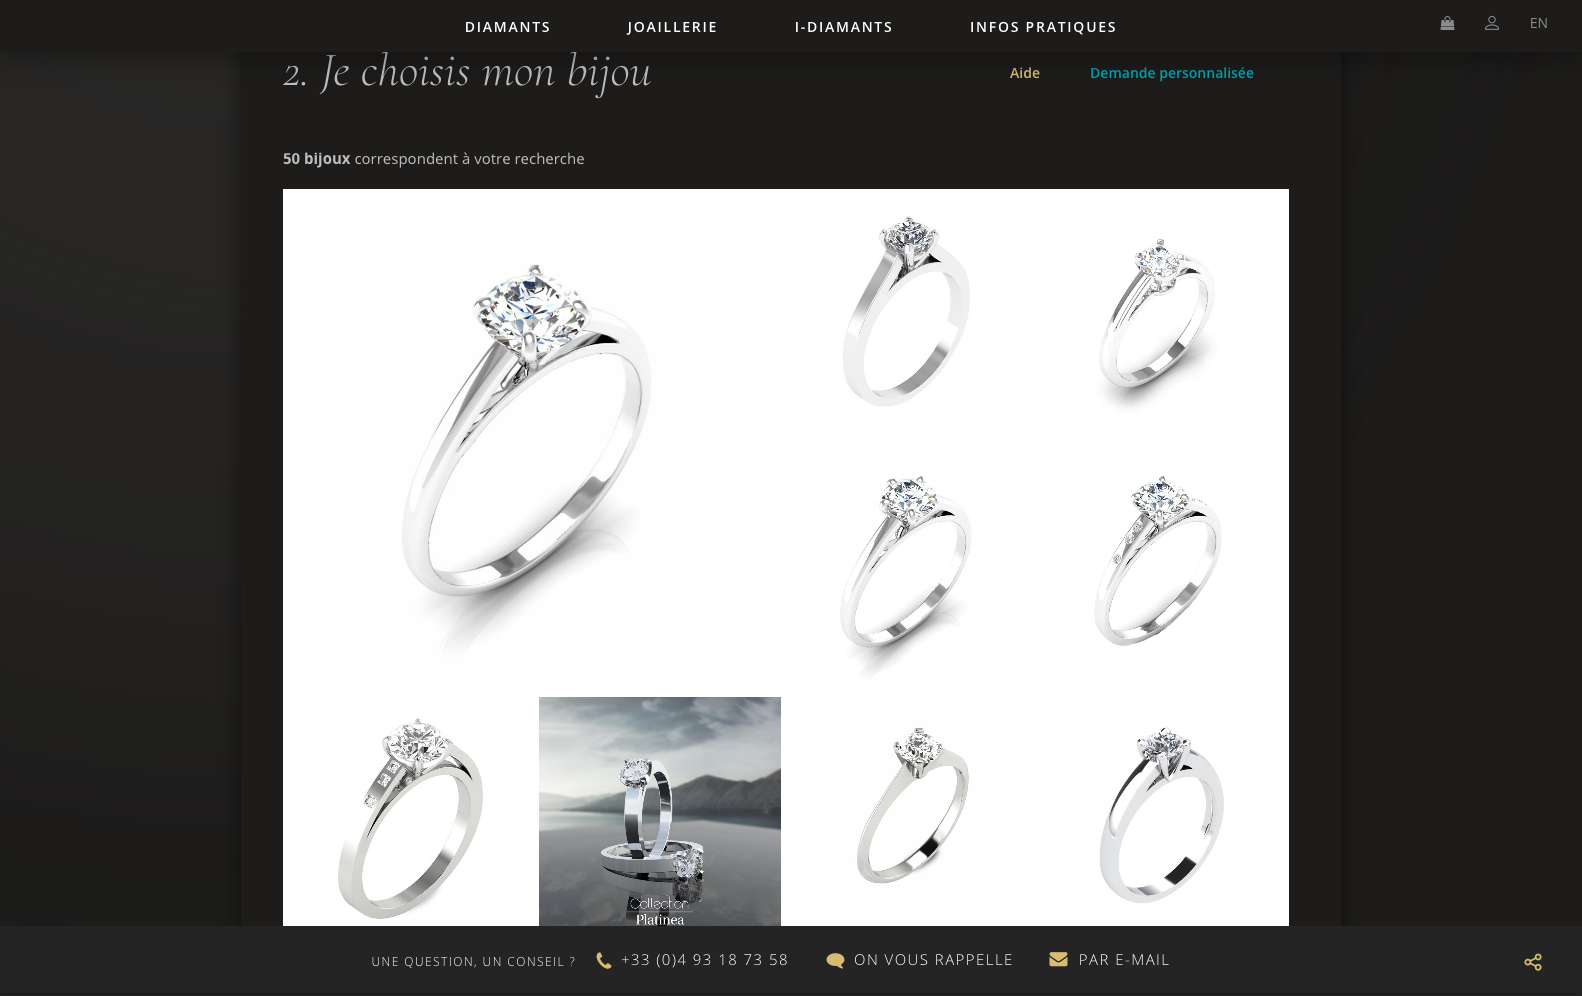 I-diamants.com - creation du site internet e-commerce, diamant et joaillerie - Refonte du site internet responsive i-diamants.com  - 2